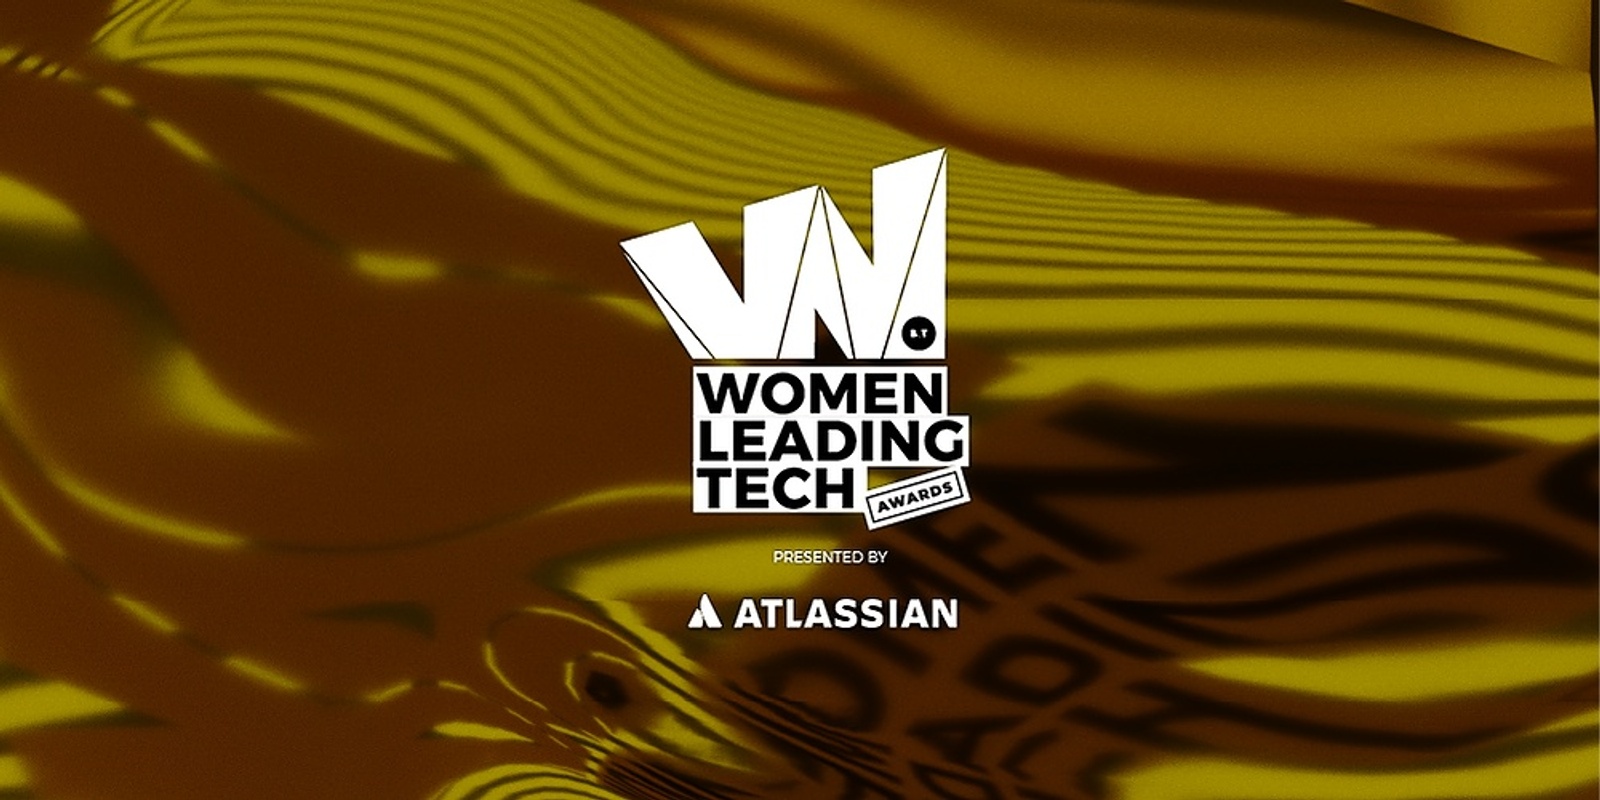 B&T Women Leading Tech Awards 2022, presented by Atlassian